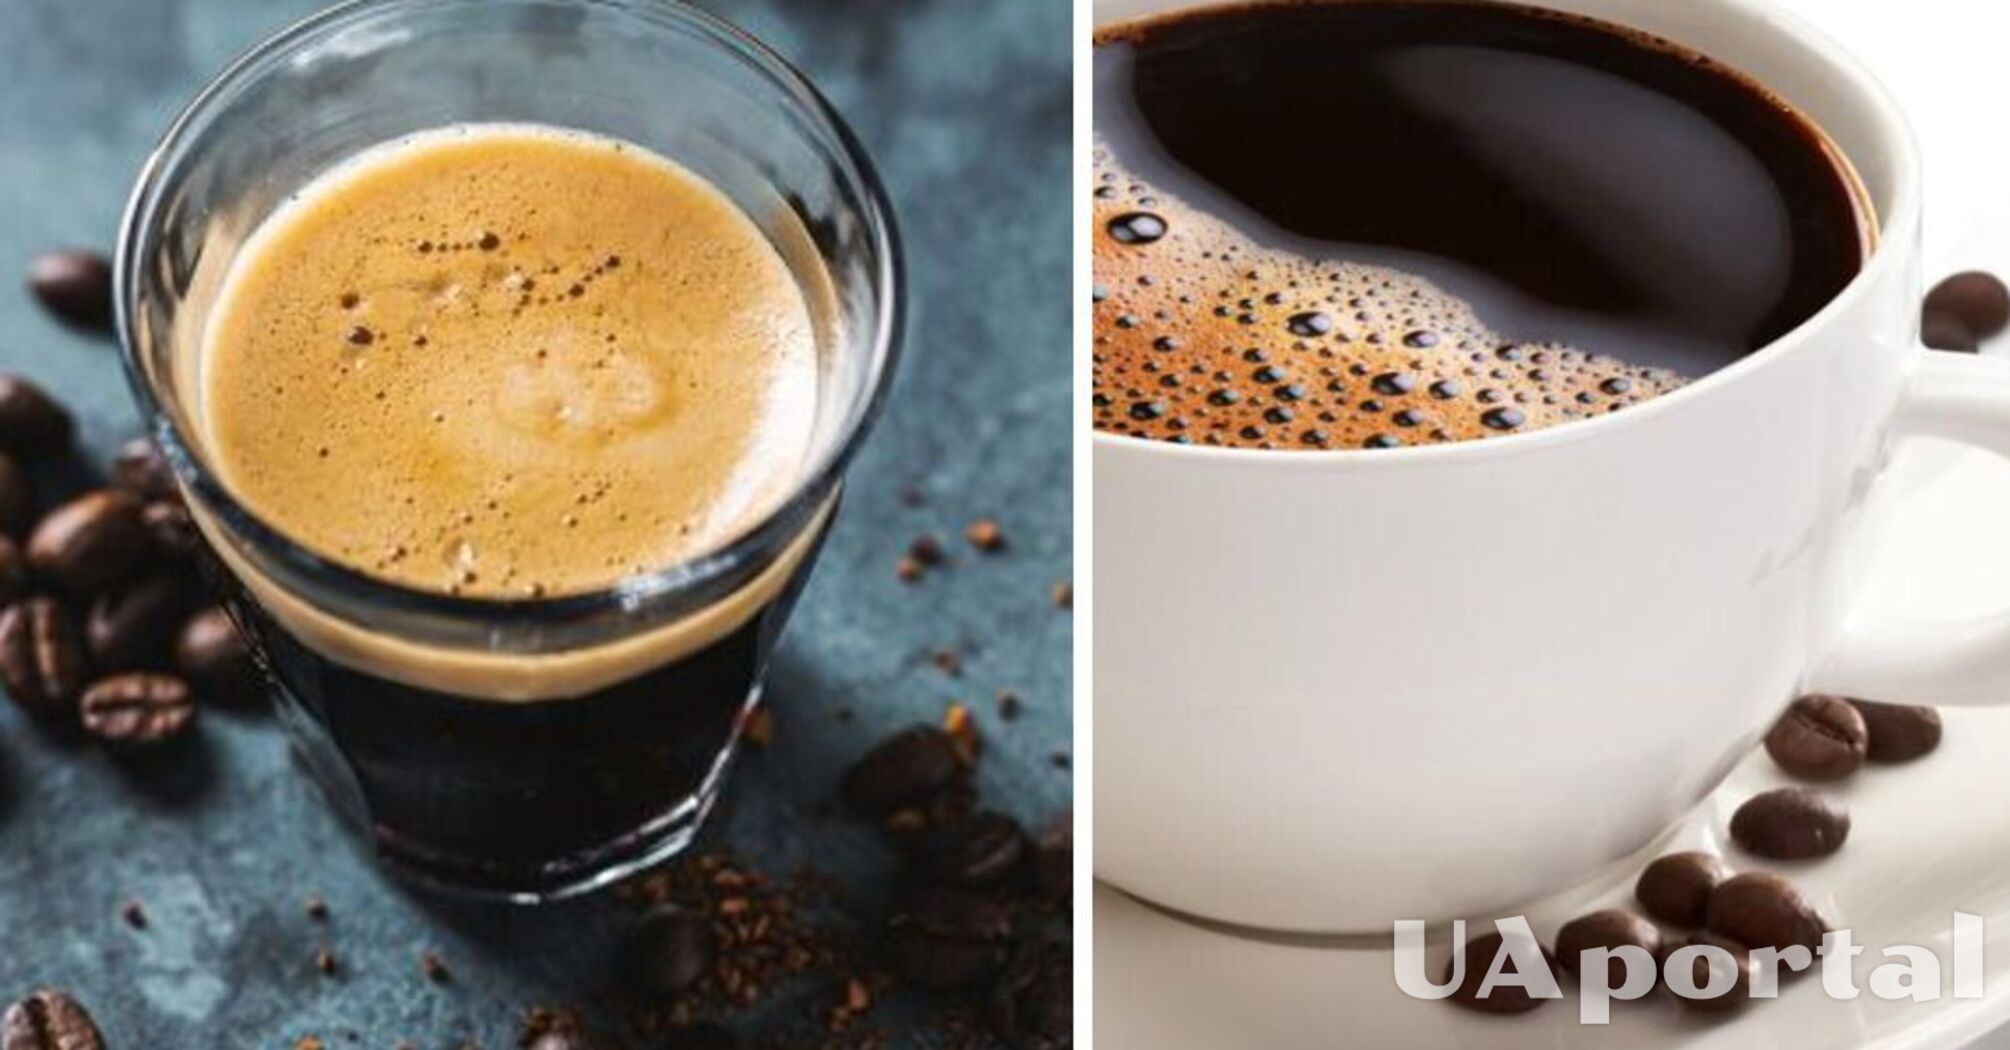 Повышает риск инфаркта и раздражает кишечник: кому категорически противопоказано пить кофе